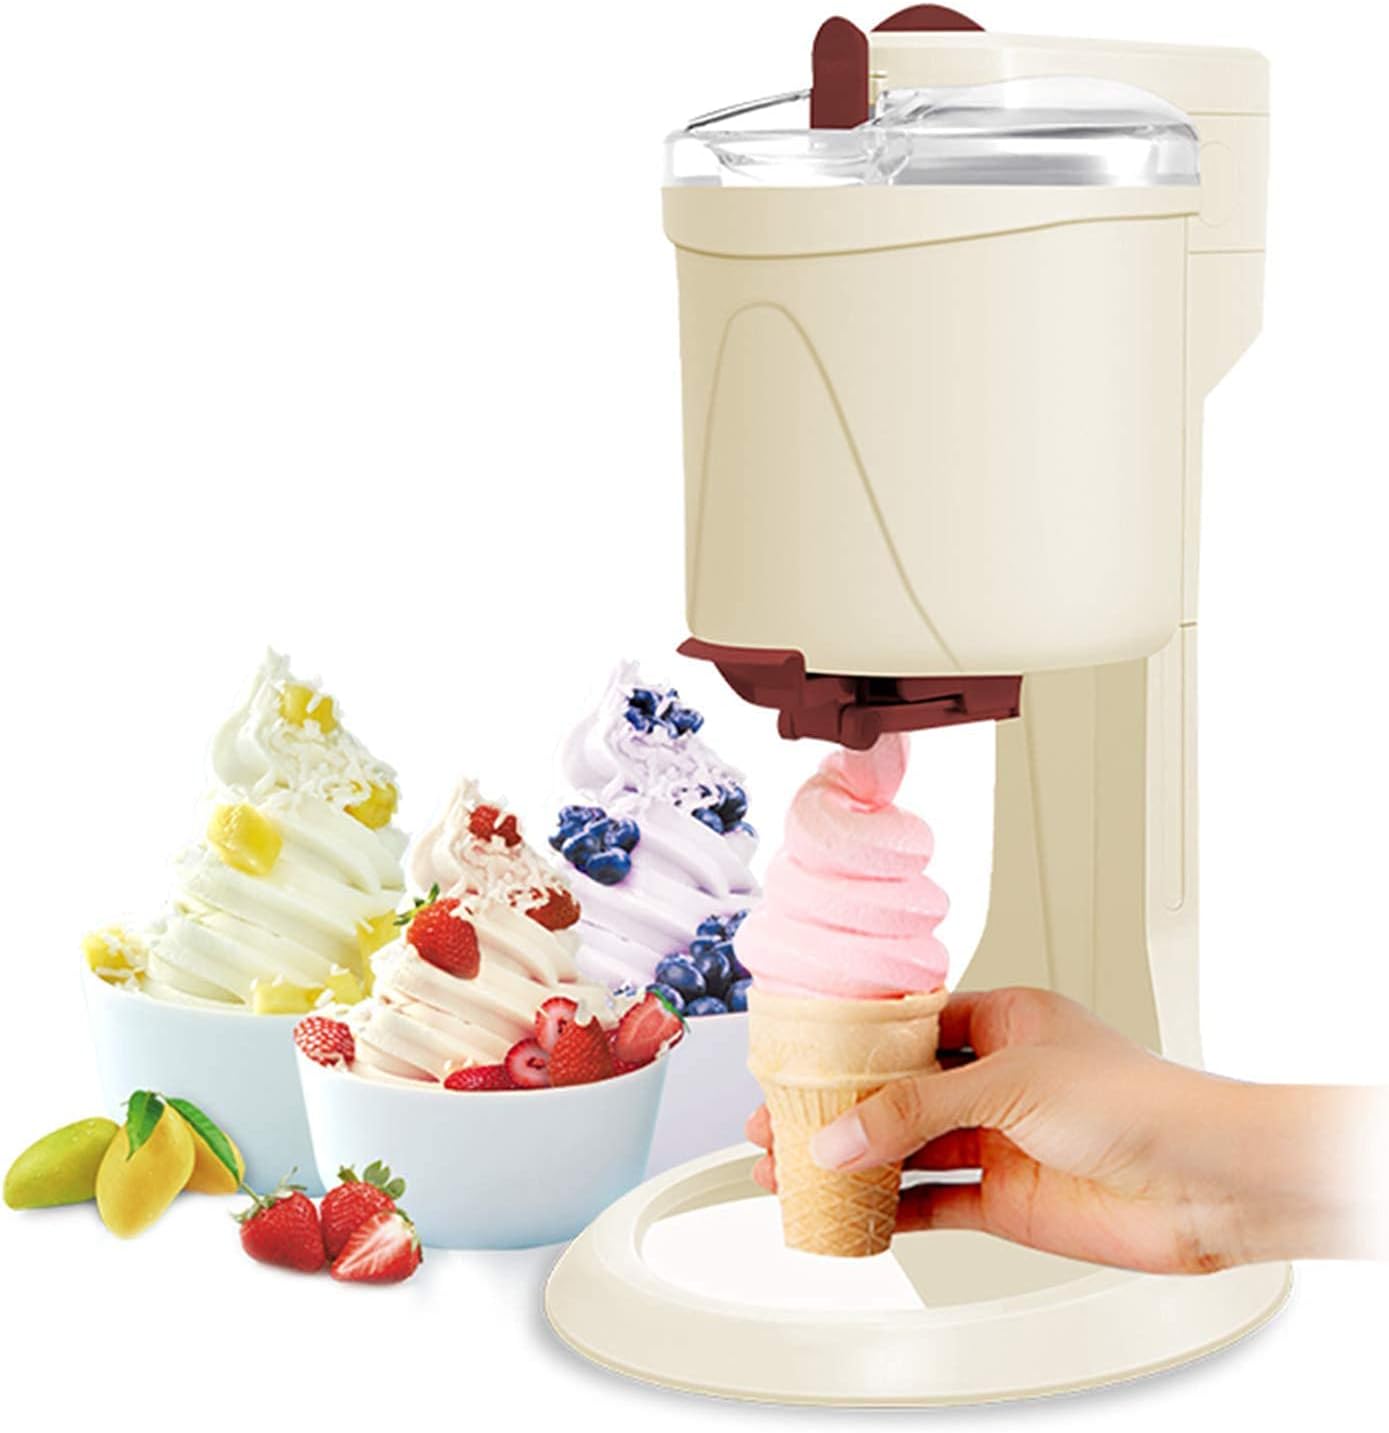 Macchine per fare il gelato, l'elettrodomestico più ambito dell'estate: le  migliori